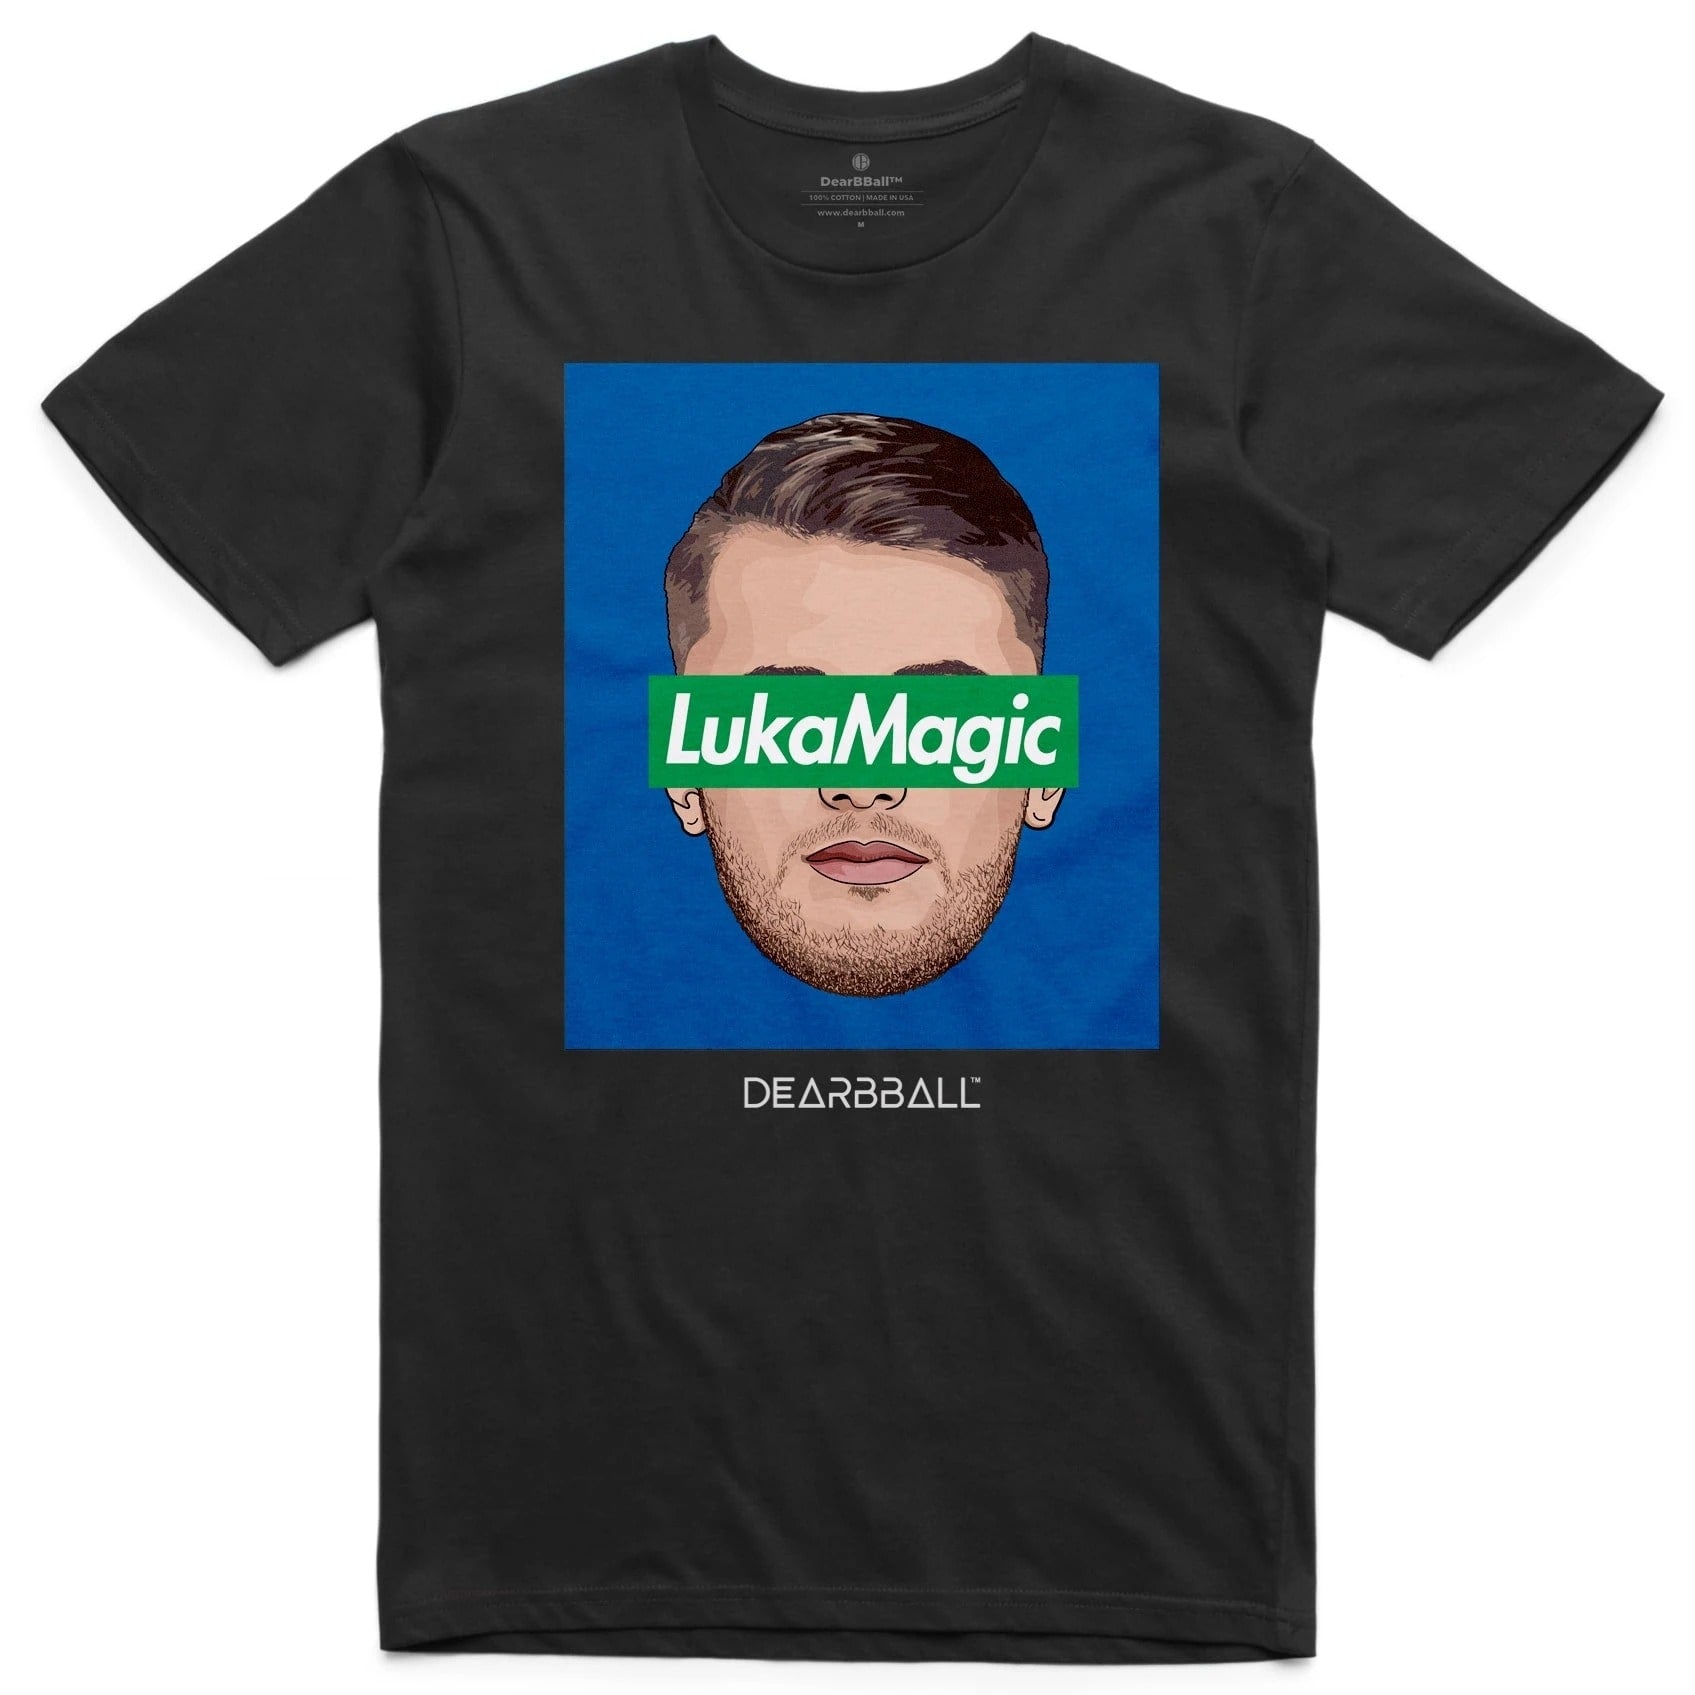 CHILD] DearBBall T-Shirt - LukaMagic - DearBBall™